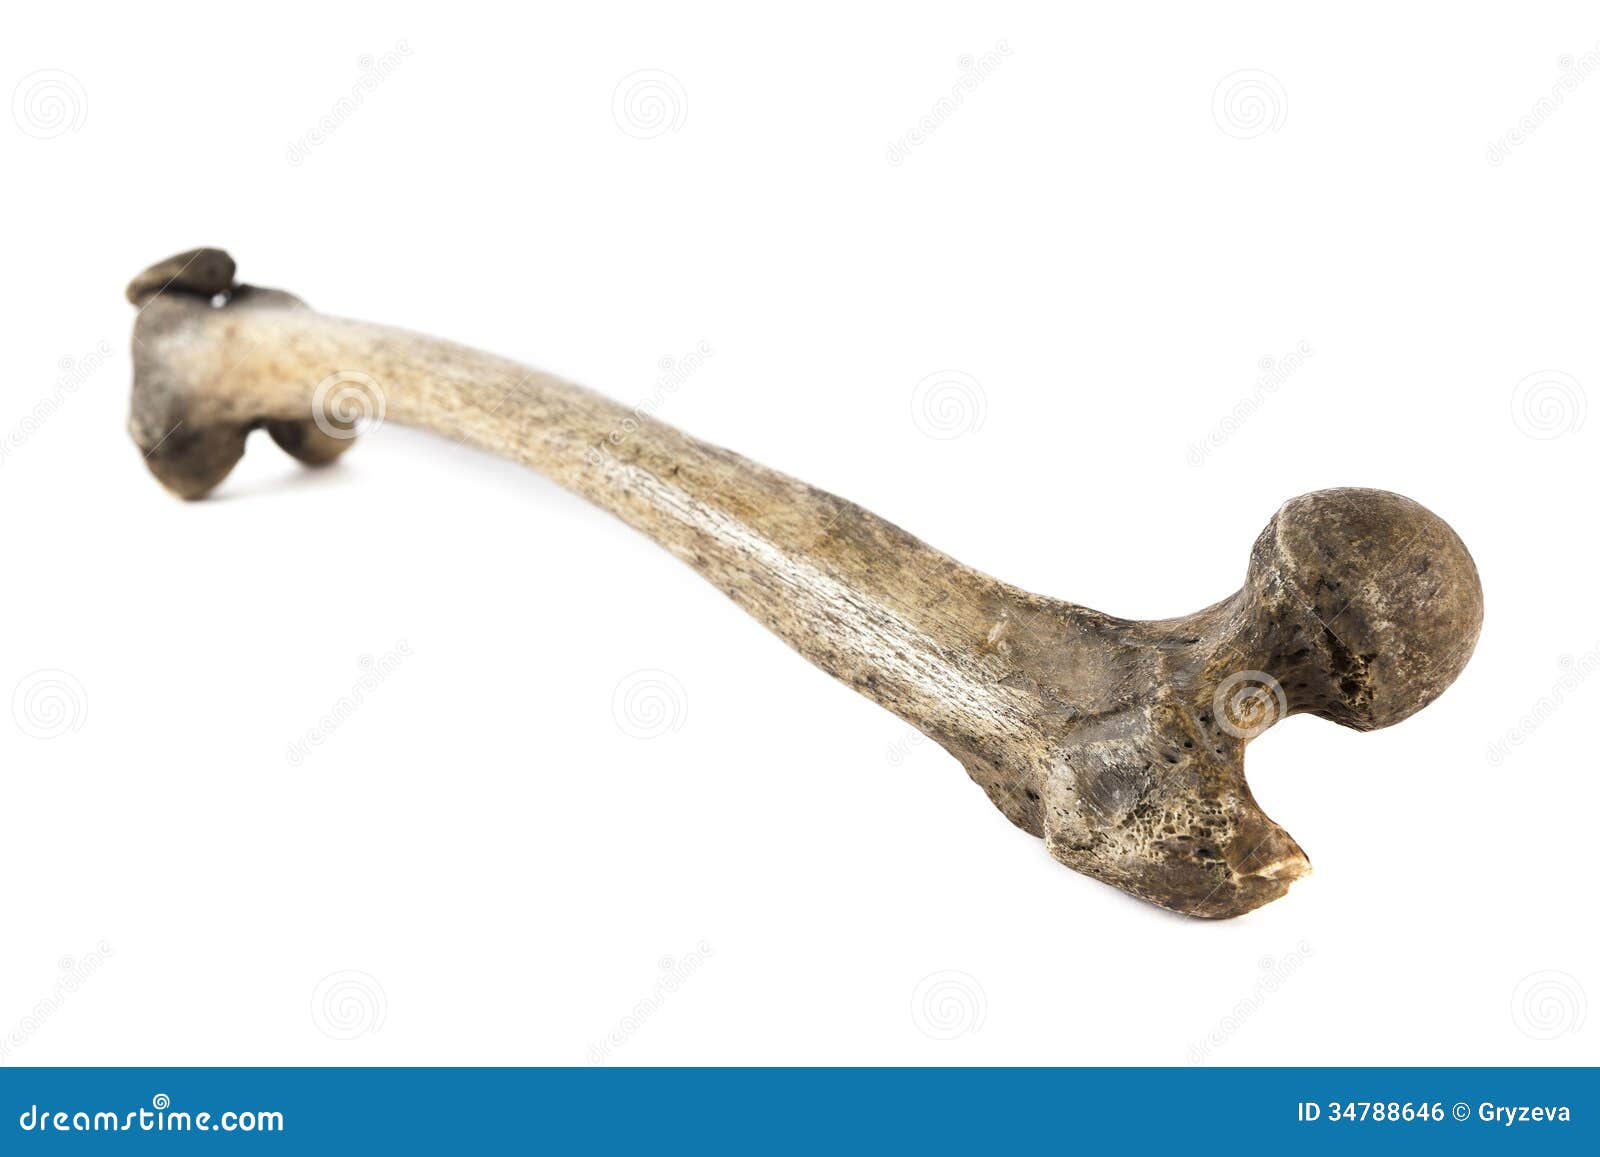 Elder bone. Старинная кость человека.